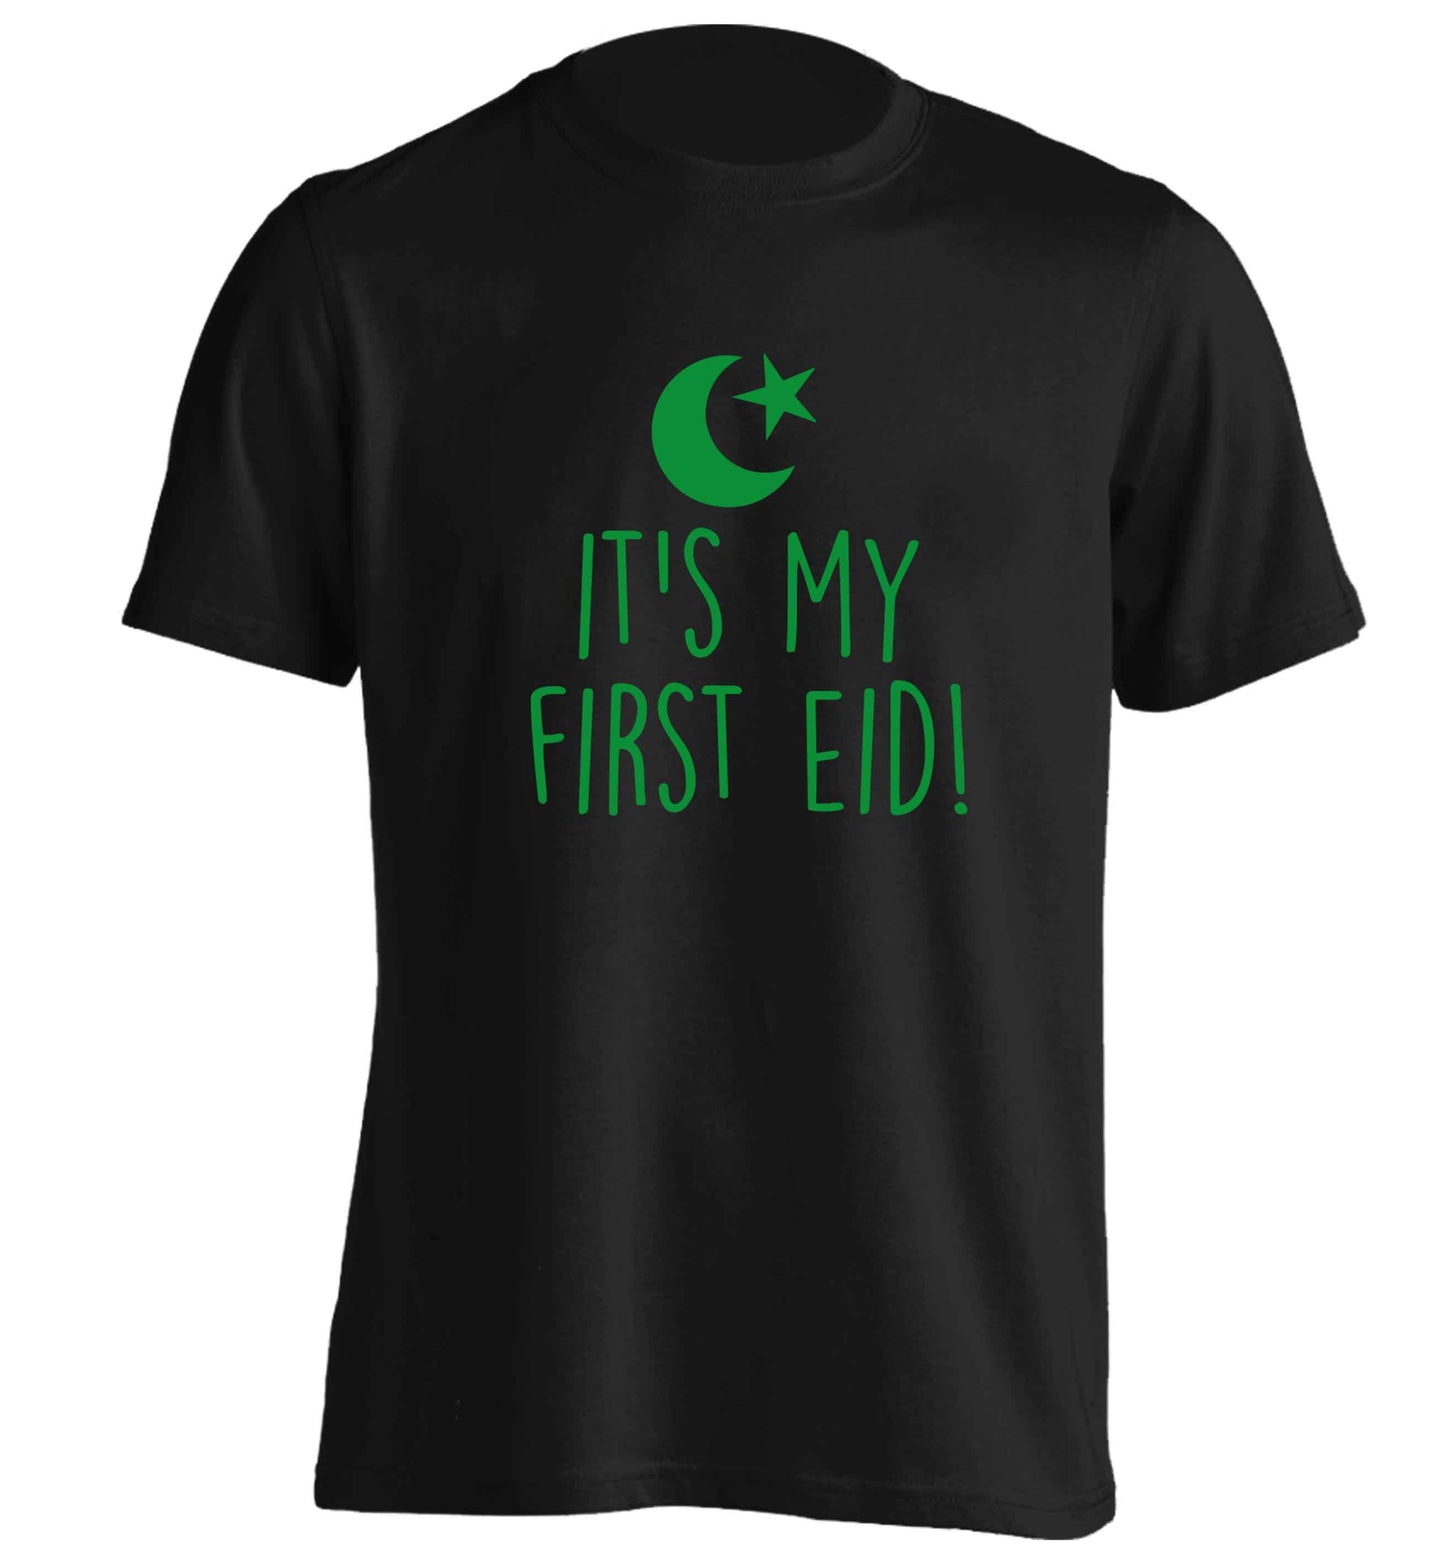 It's my first Eid adults unisex black Tshirt 2XL